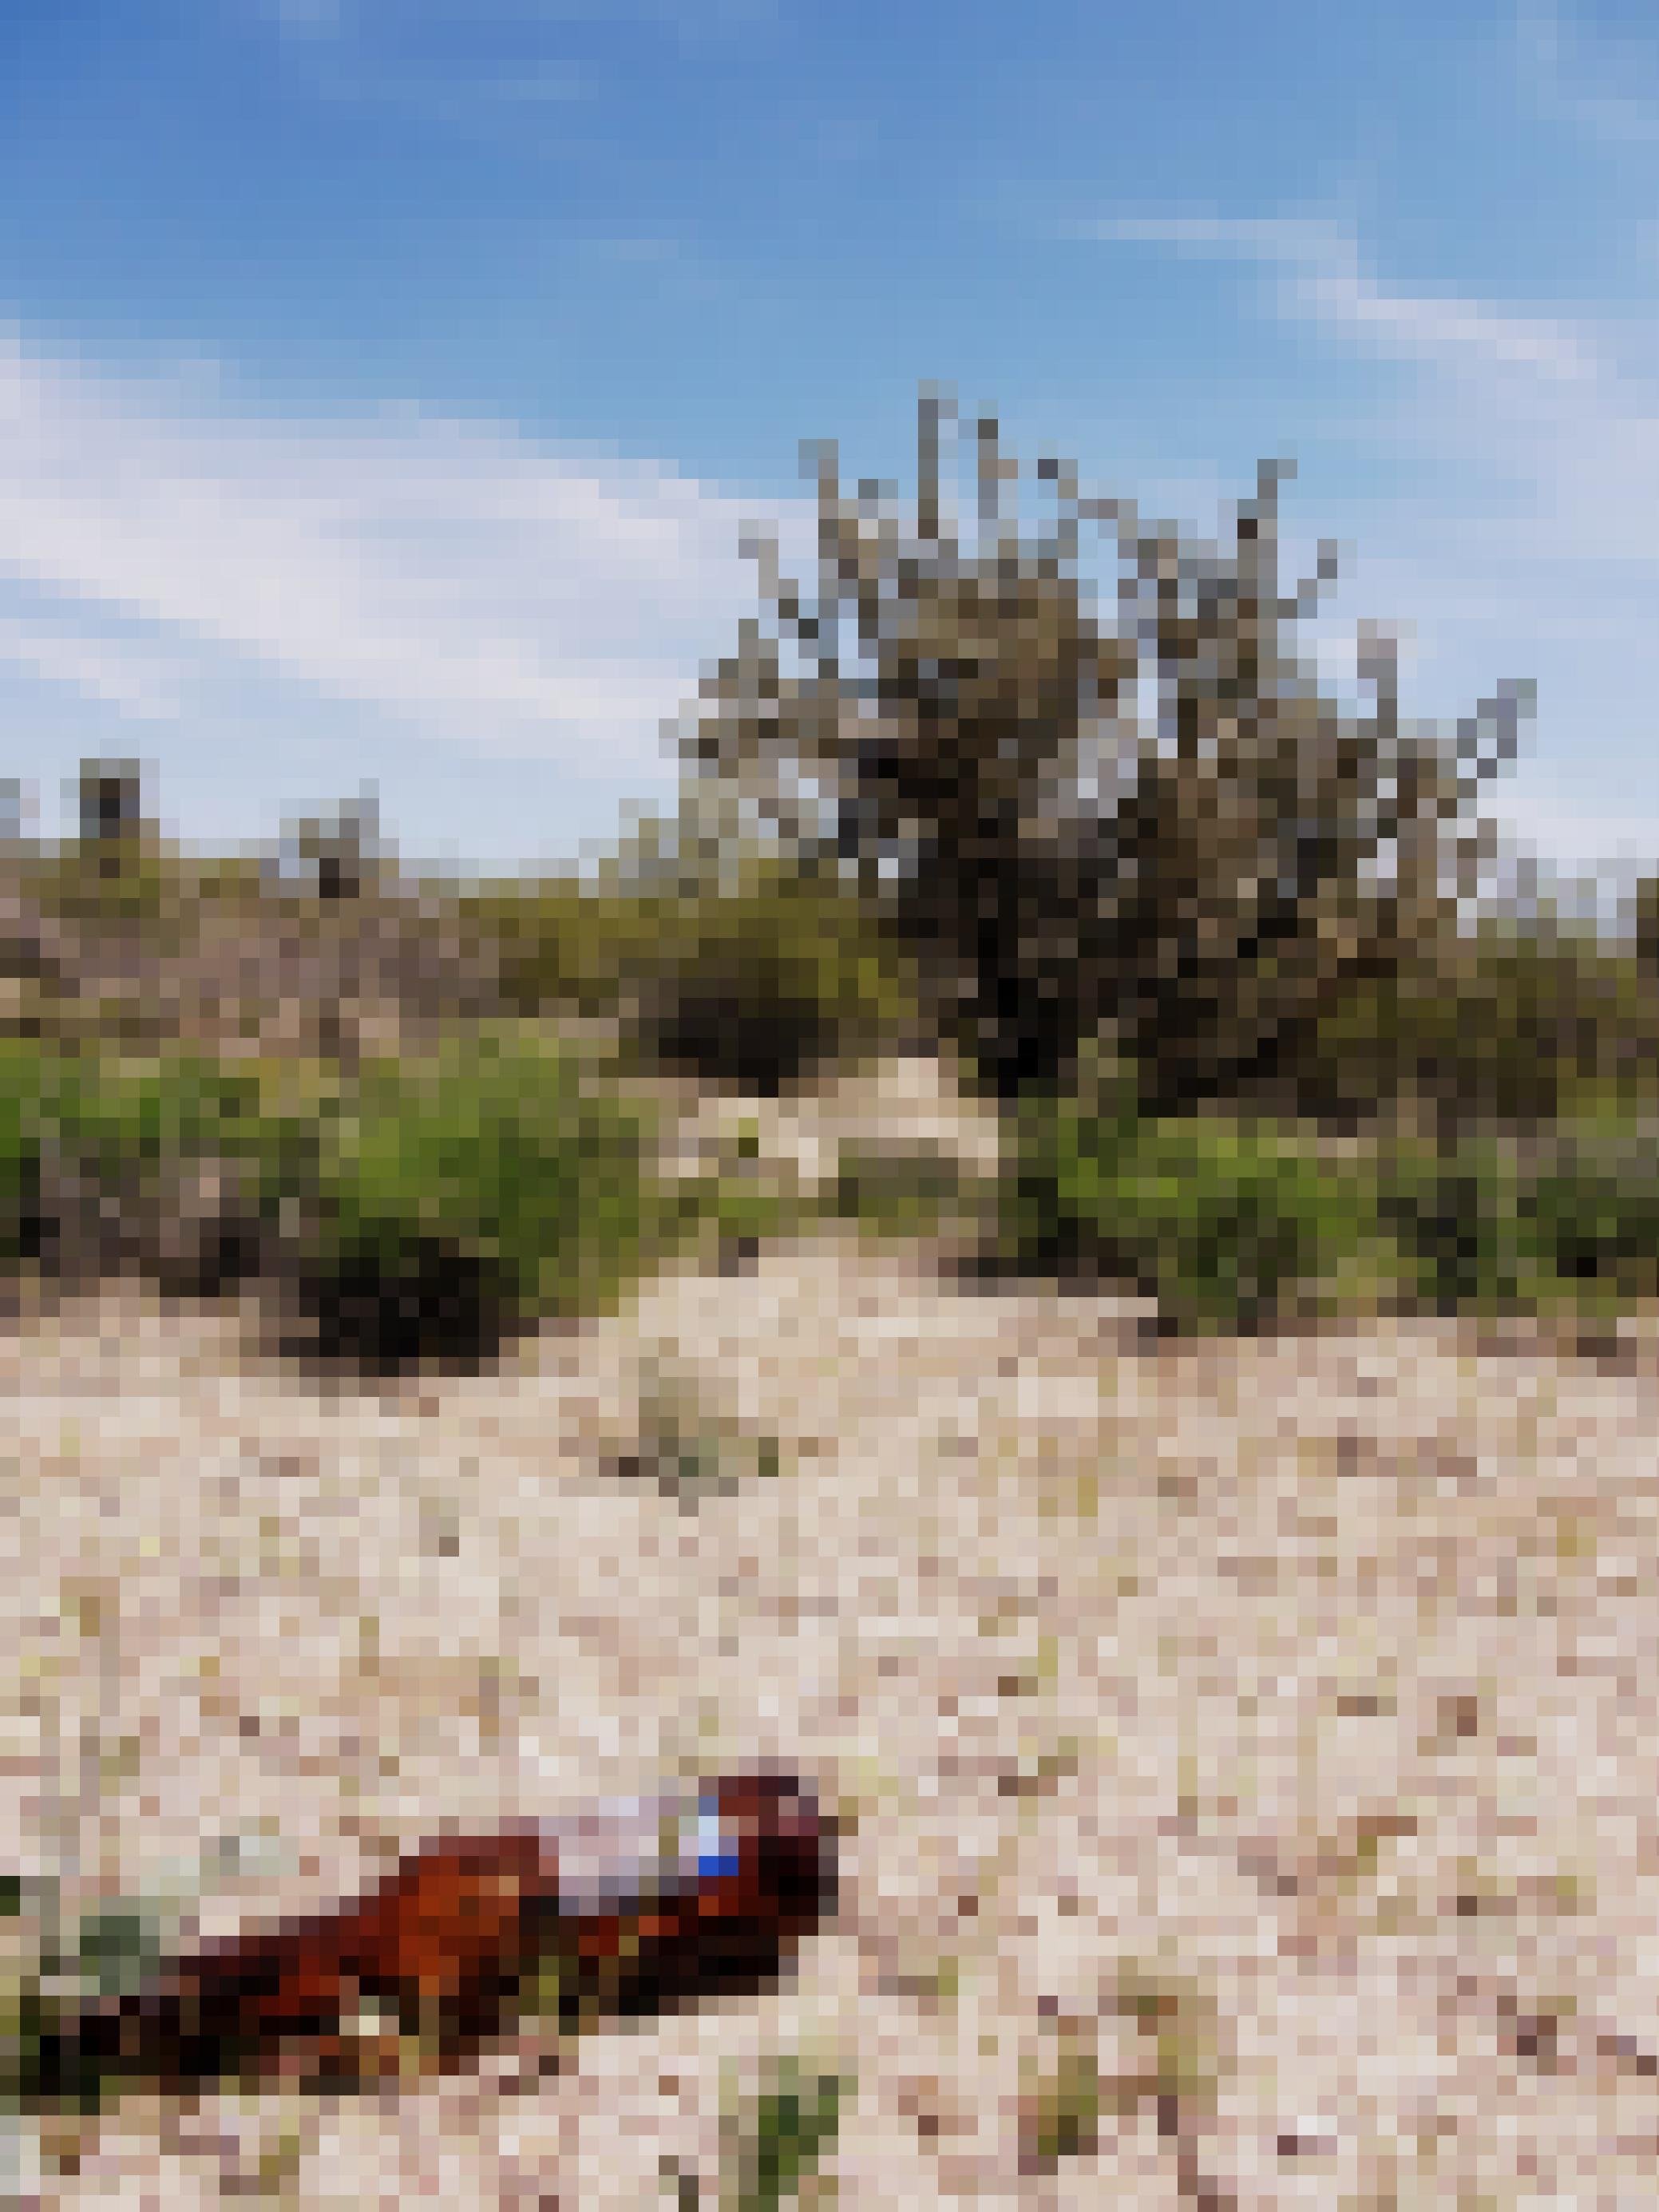 Eine Bierflasche liegt im Wüstensand.